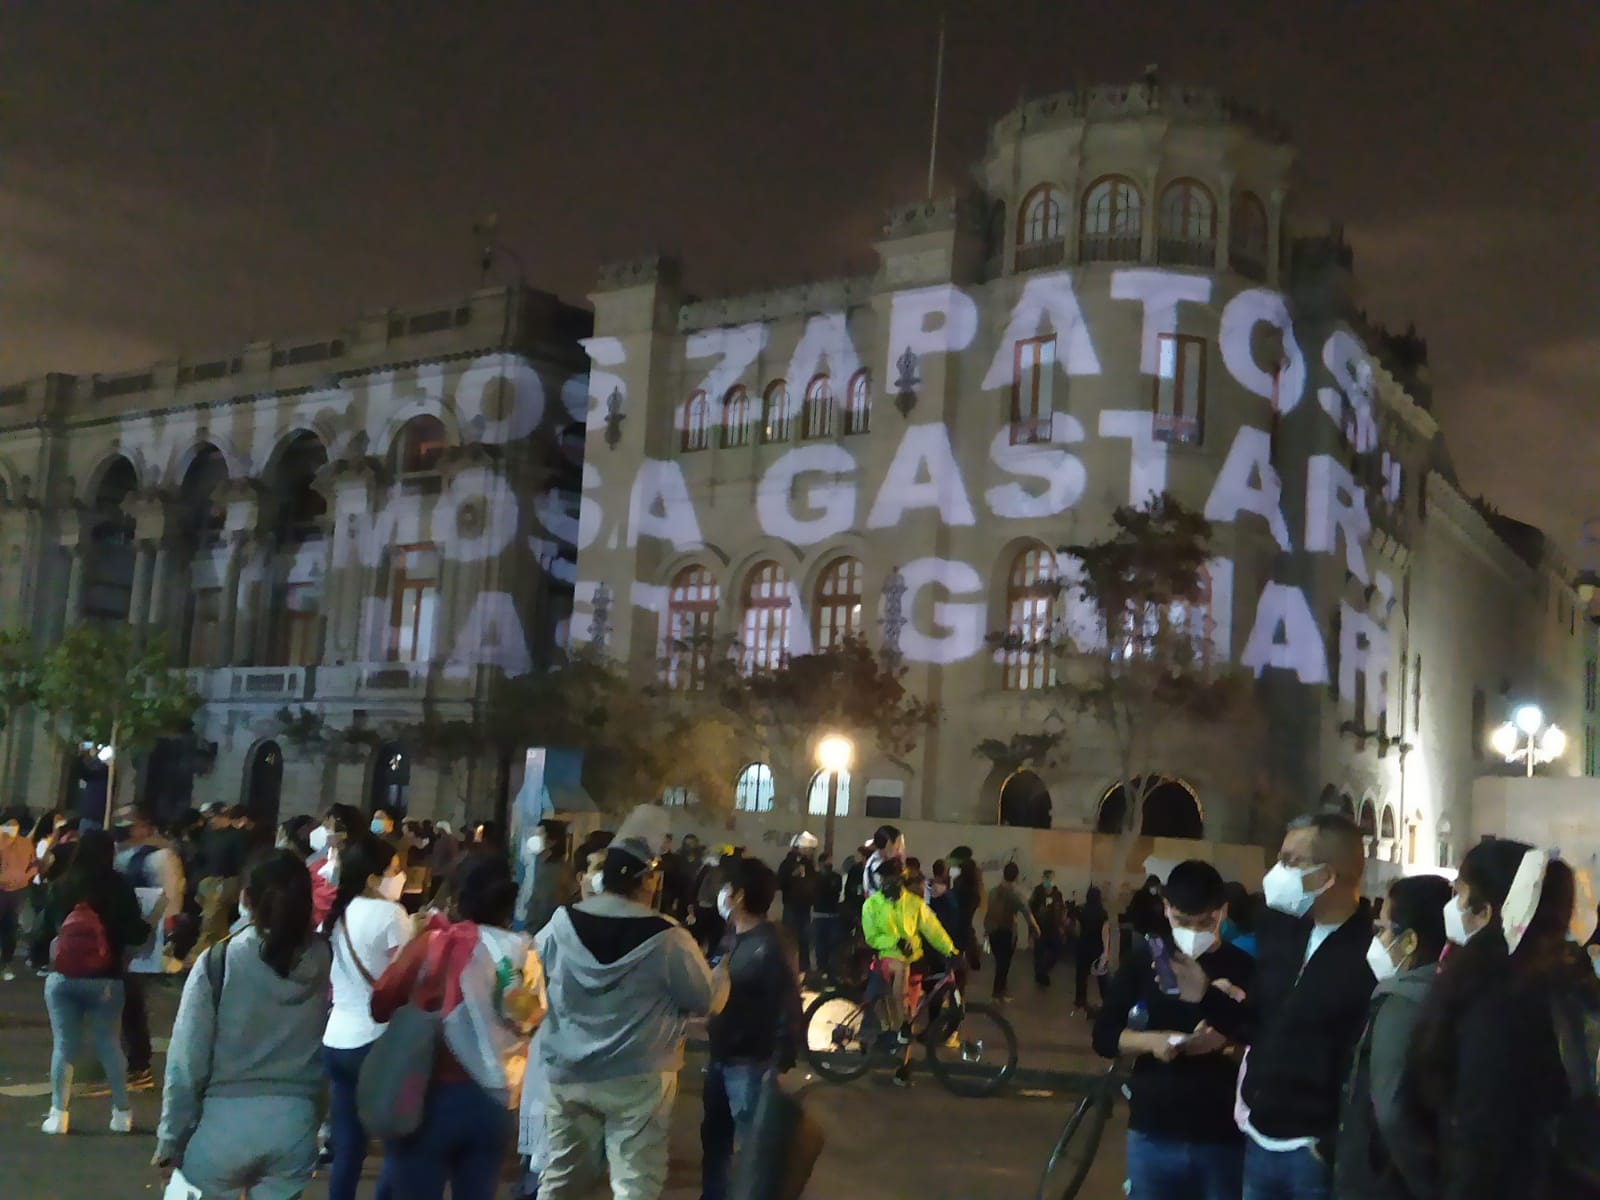 Perú protestas